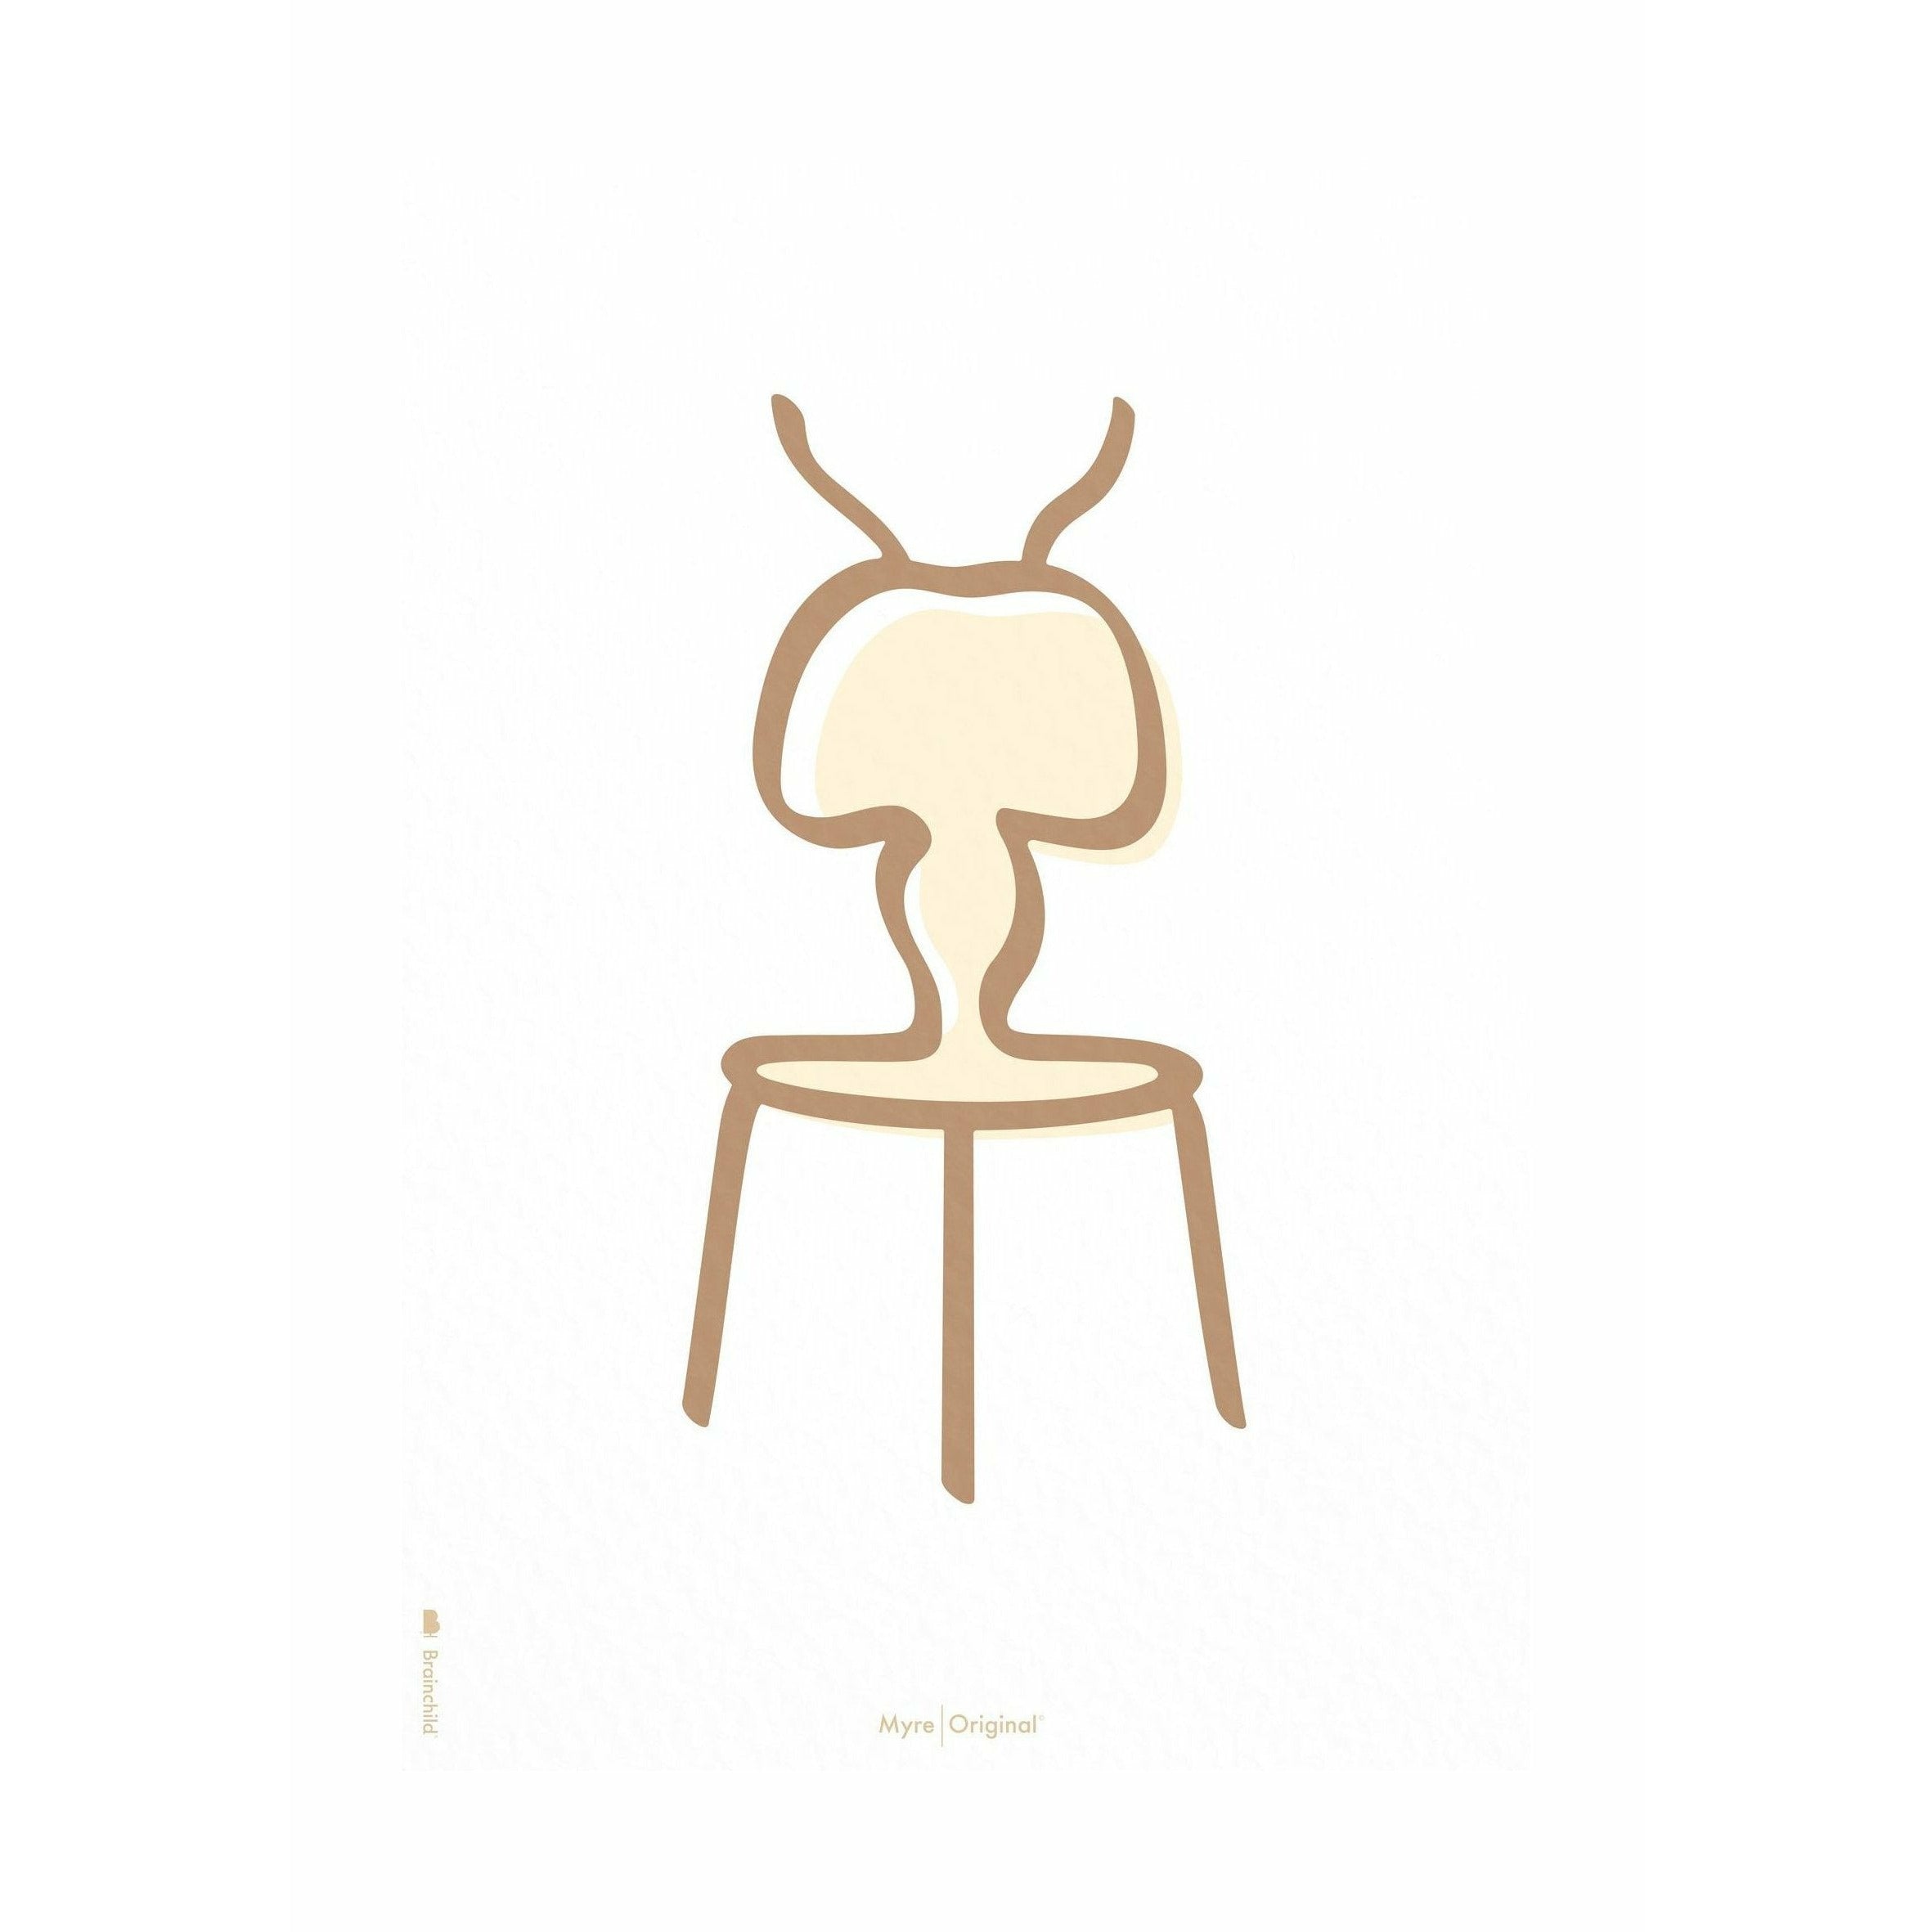 Pomysły plakat linii mrówek bez ramki A5, białe tło